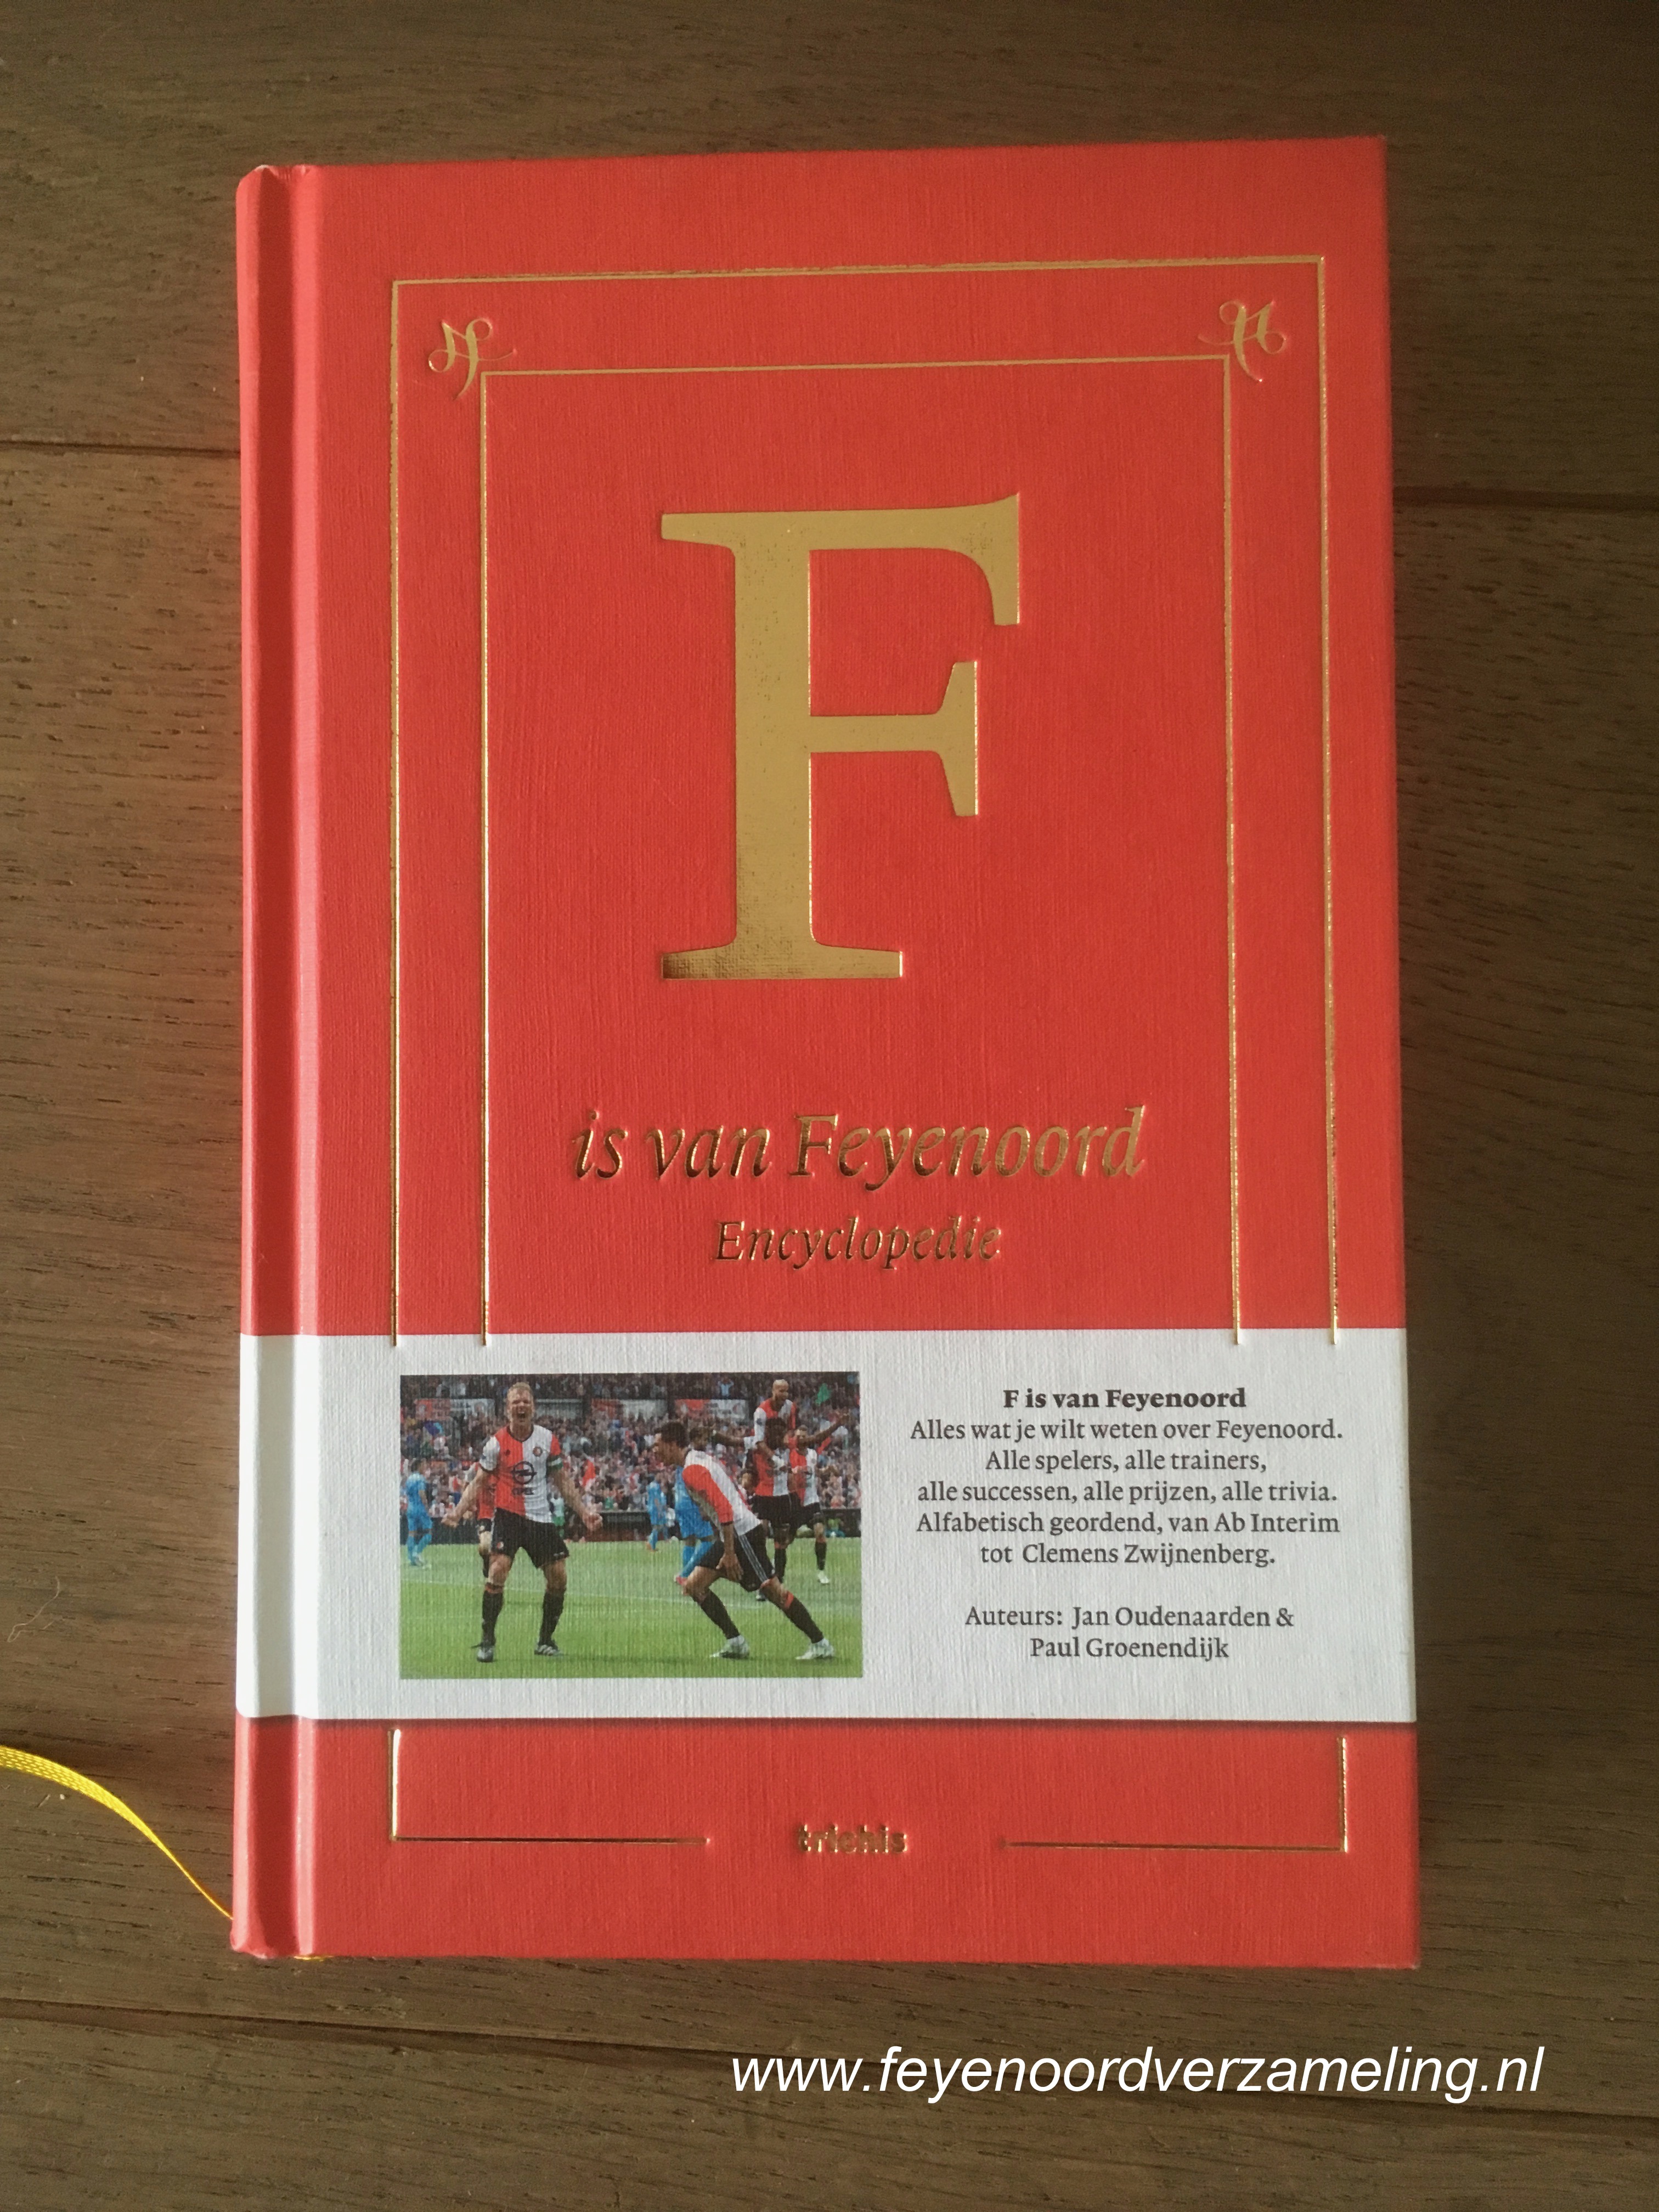 de F is van Feyenoord